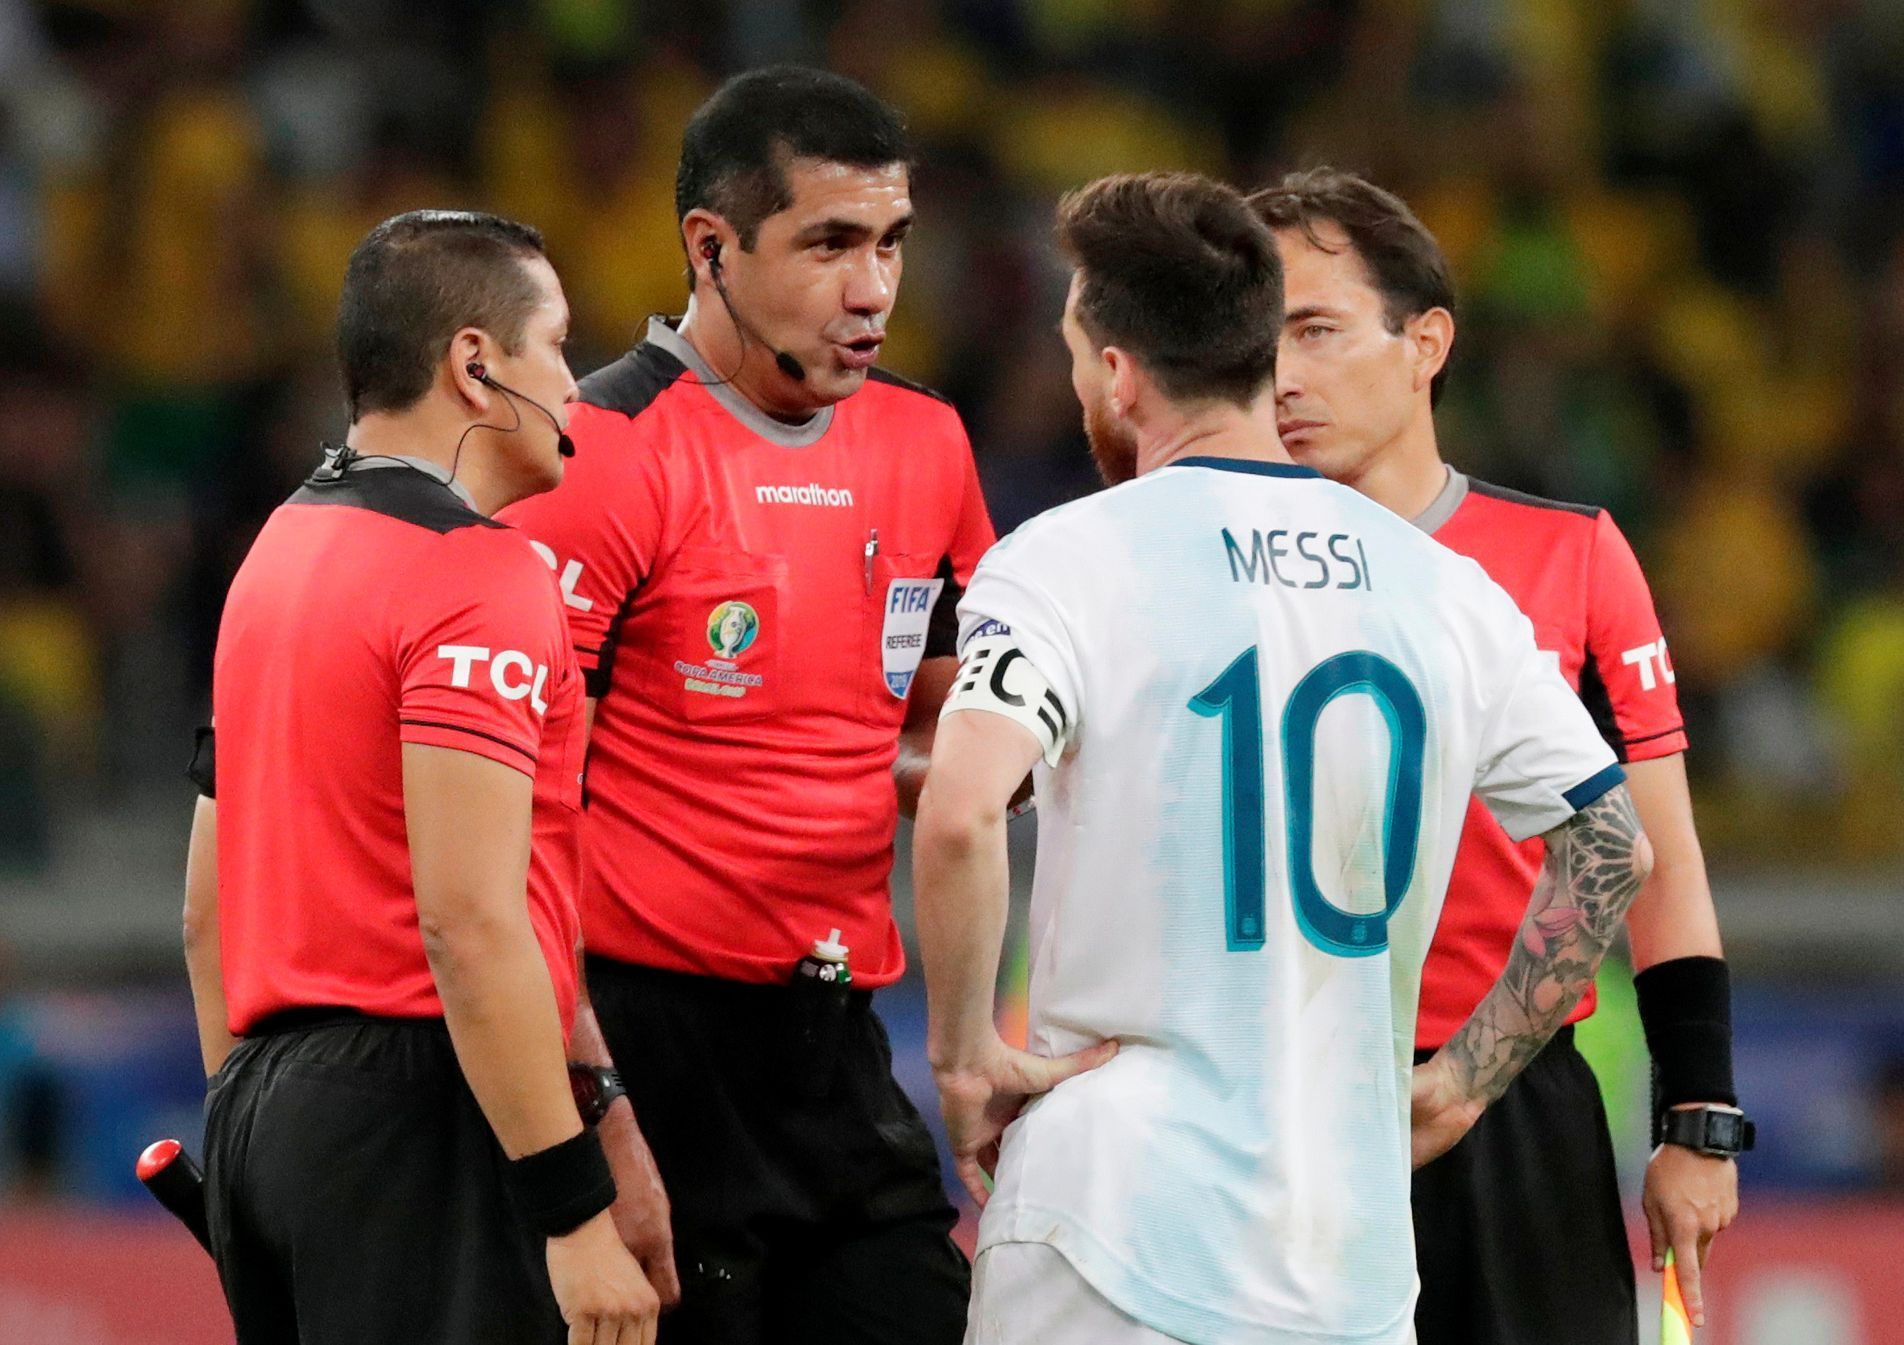 Lionel Messi v semifinále Copa Américy 2019